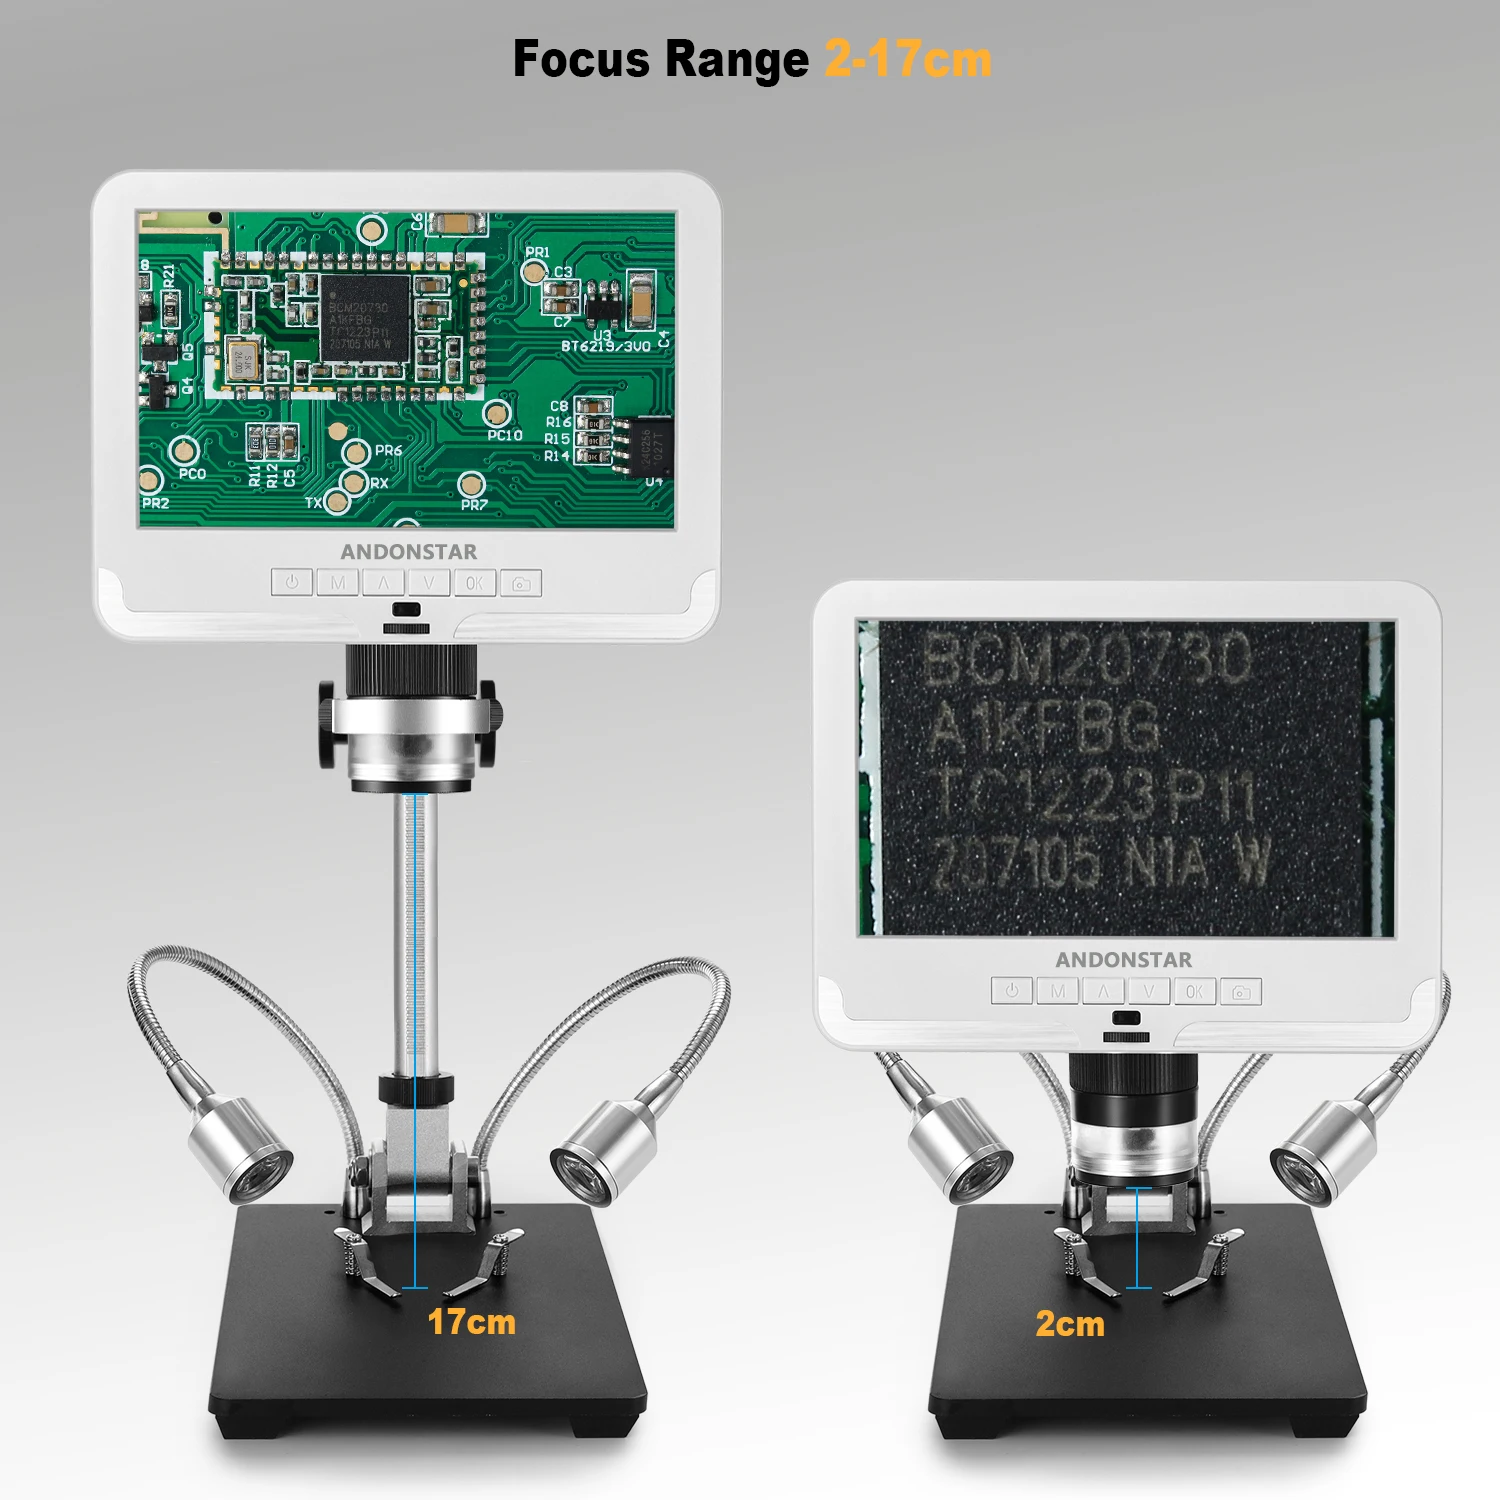 Andonstar цифровой микроскоп AD206 1080P паяльный микроскоп для ремонта телефонов SMD/SMT